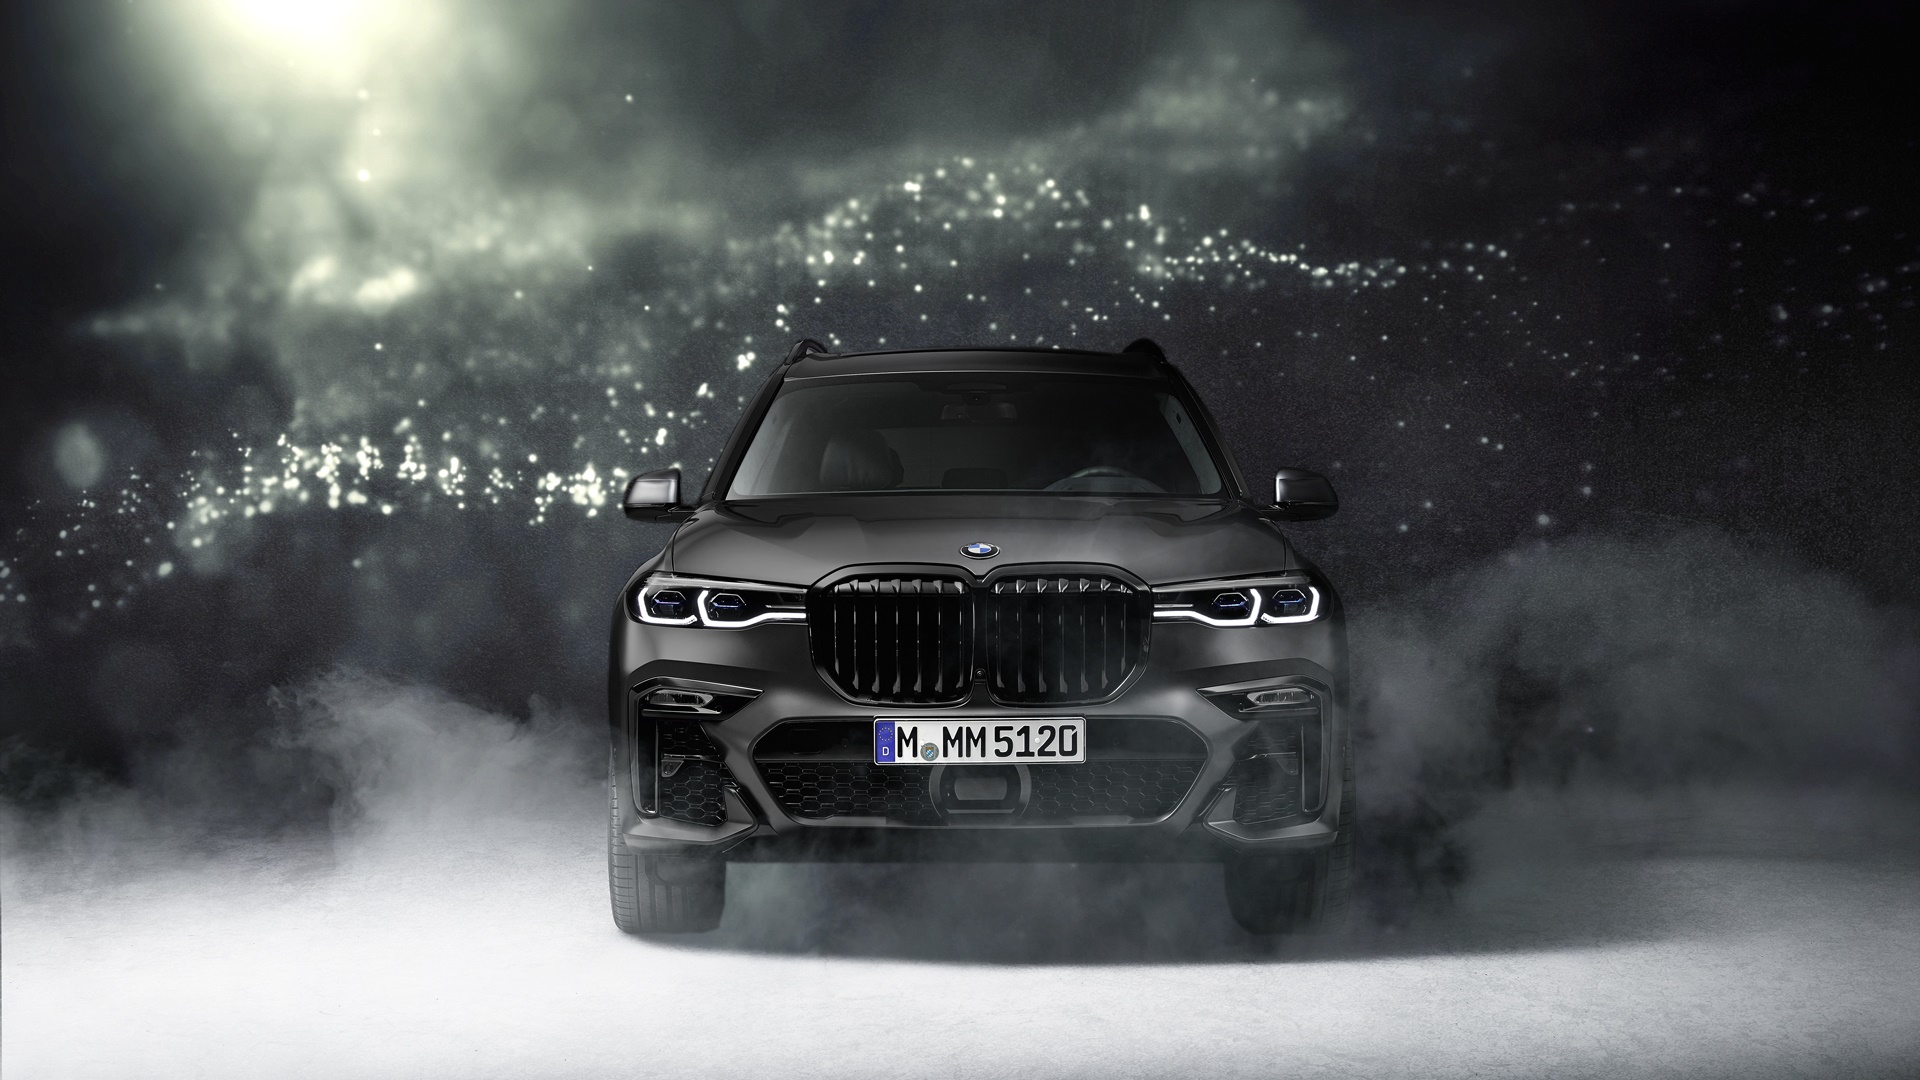 Announcing the 2021 BMW X7 Dark Shadow Edition